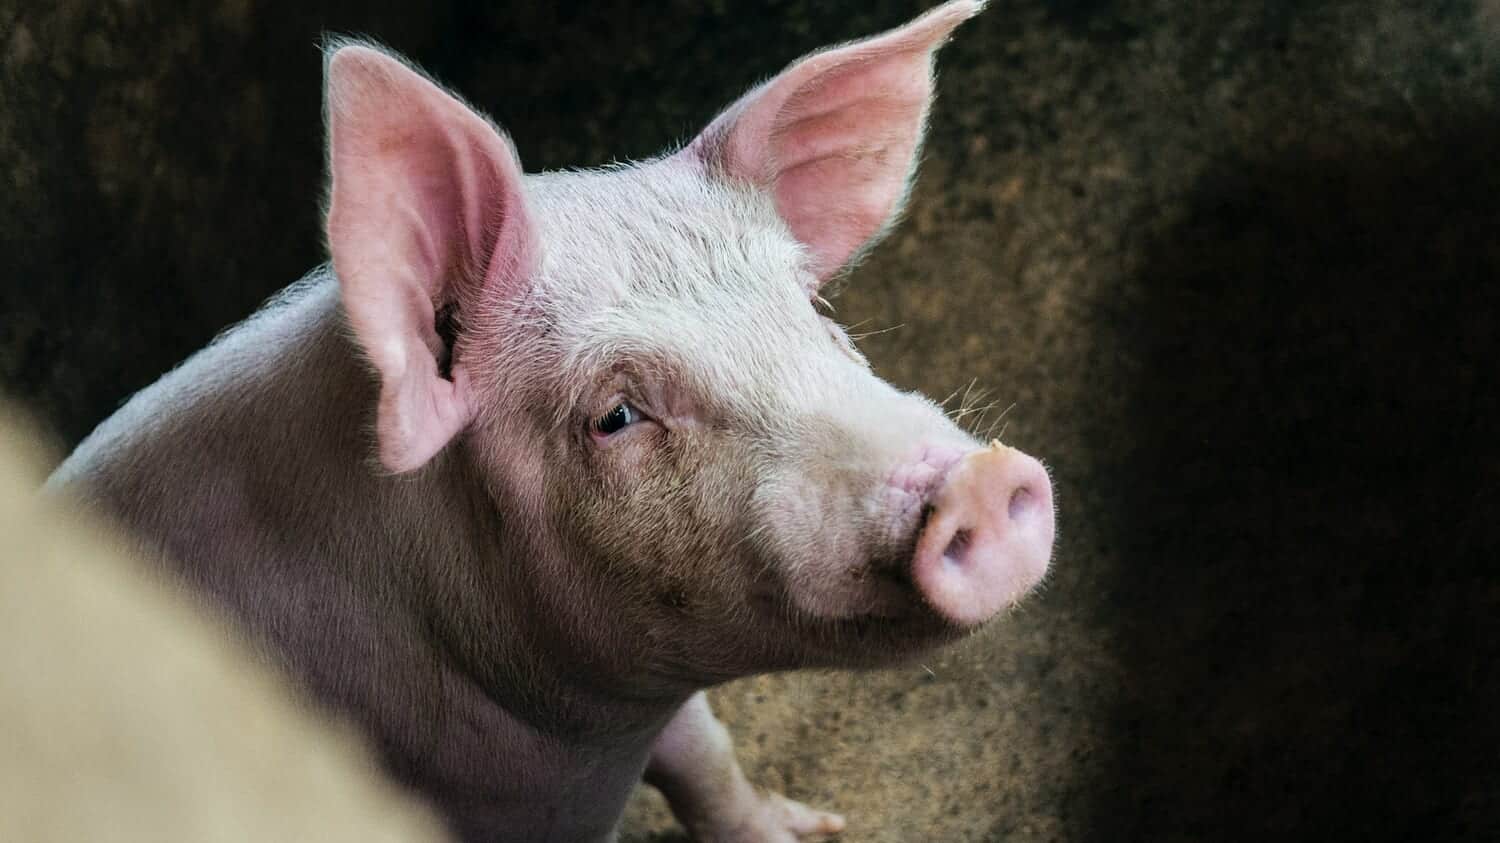 死後1時間経過した豚の臓器を部分的に回復させることに成功 – 臓器移植の可能性を広げるが倫理的な課題も